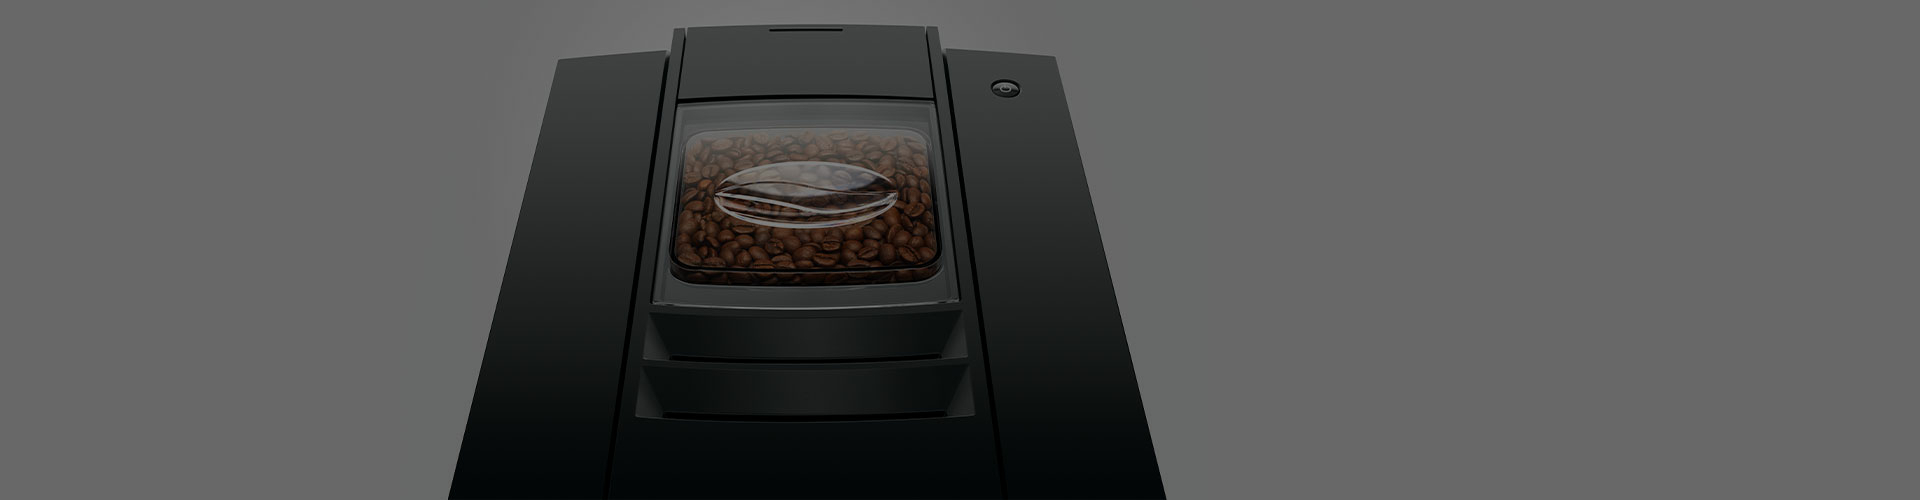 Jura E6 koffiemachine melksysteem reinigen